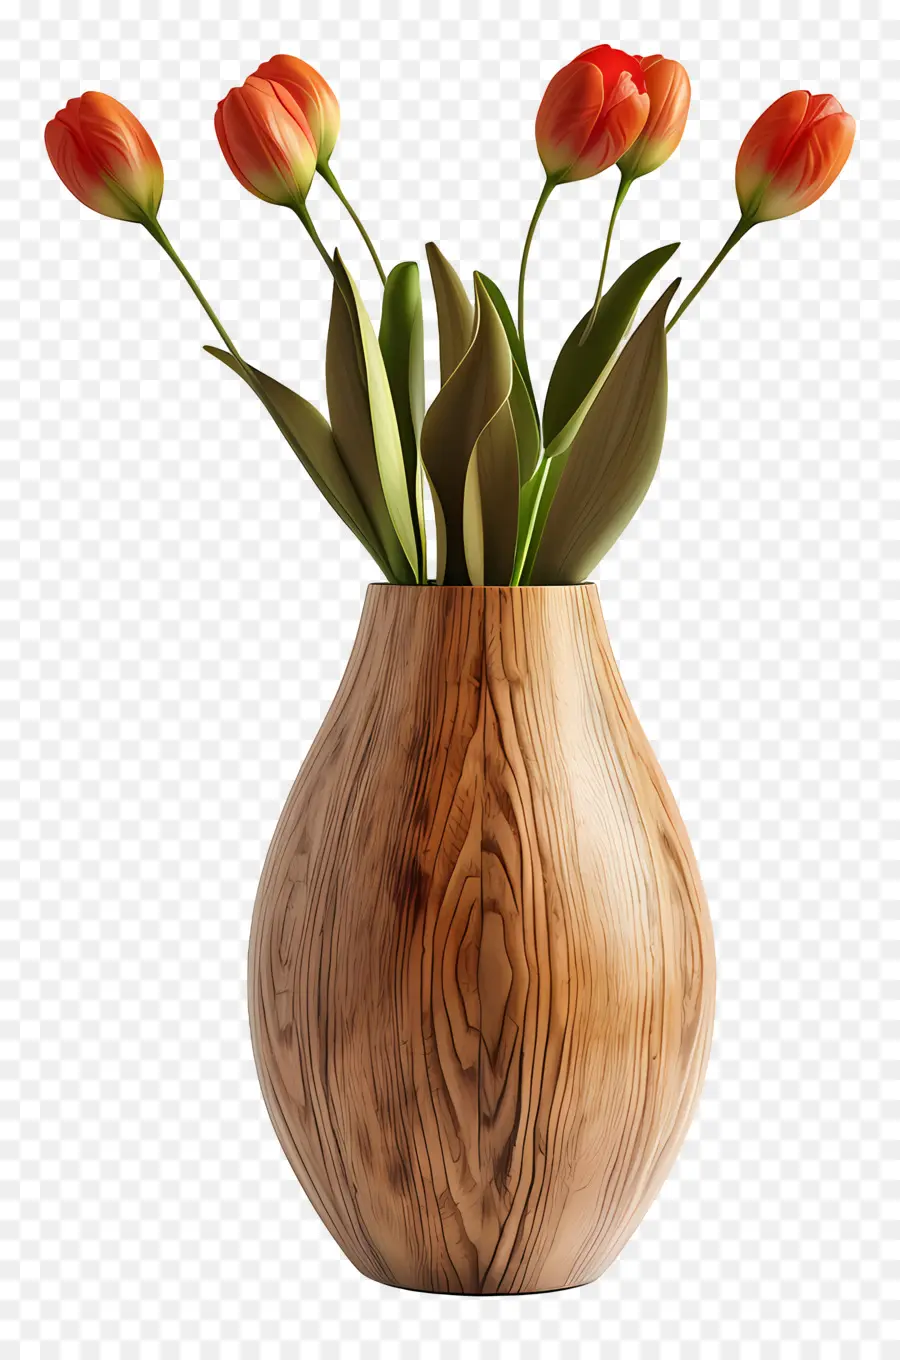 hoa sắp xếp - Hoa tulip màu cam nghệ thuật trong bình gỗ